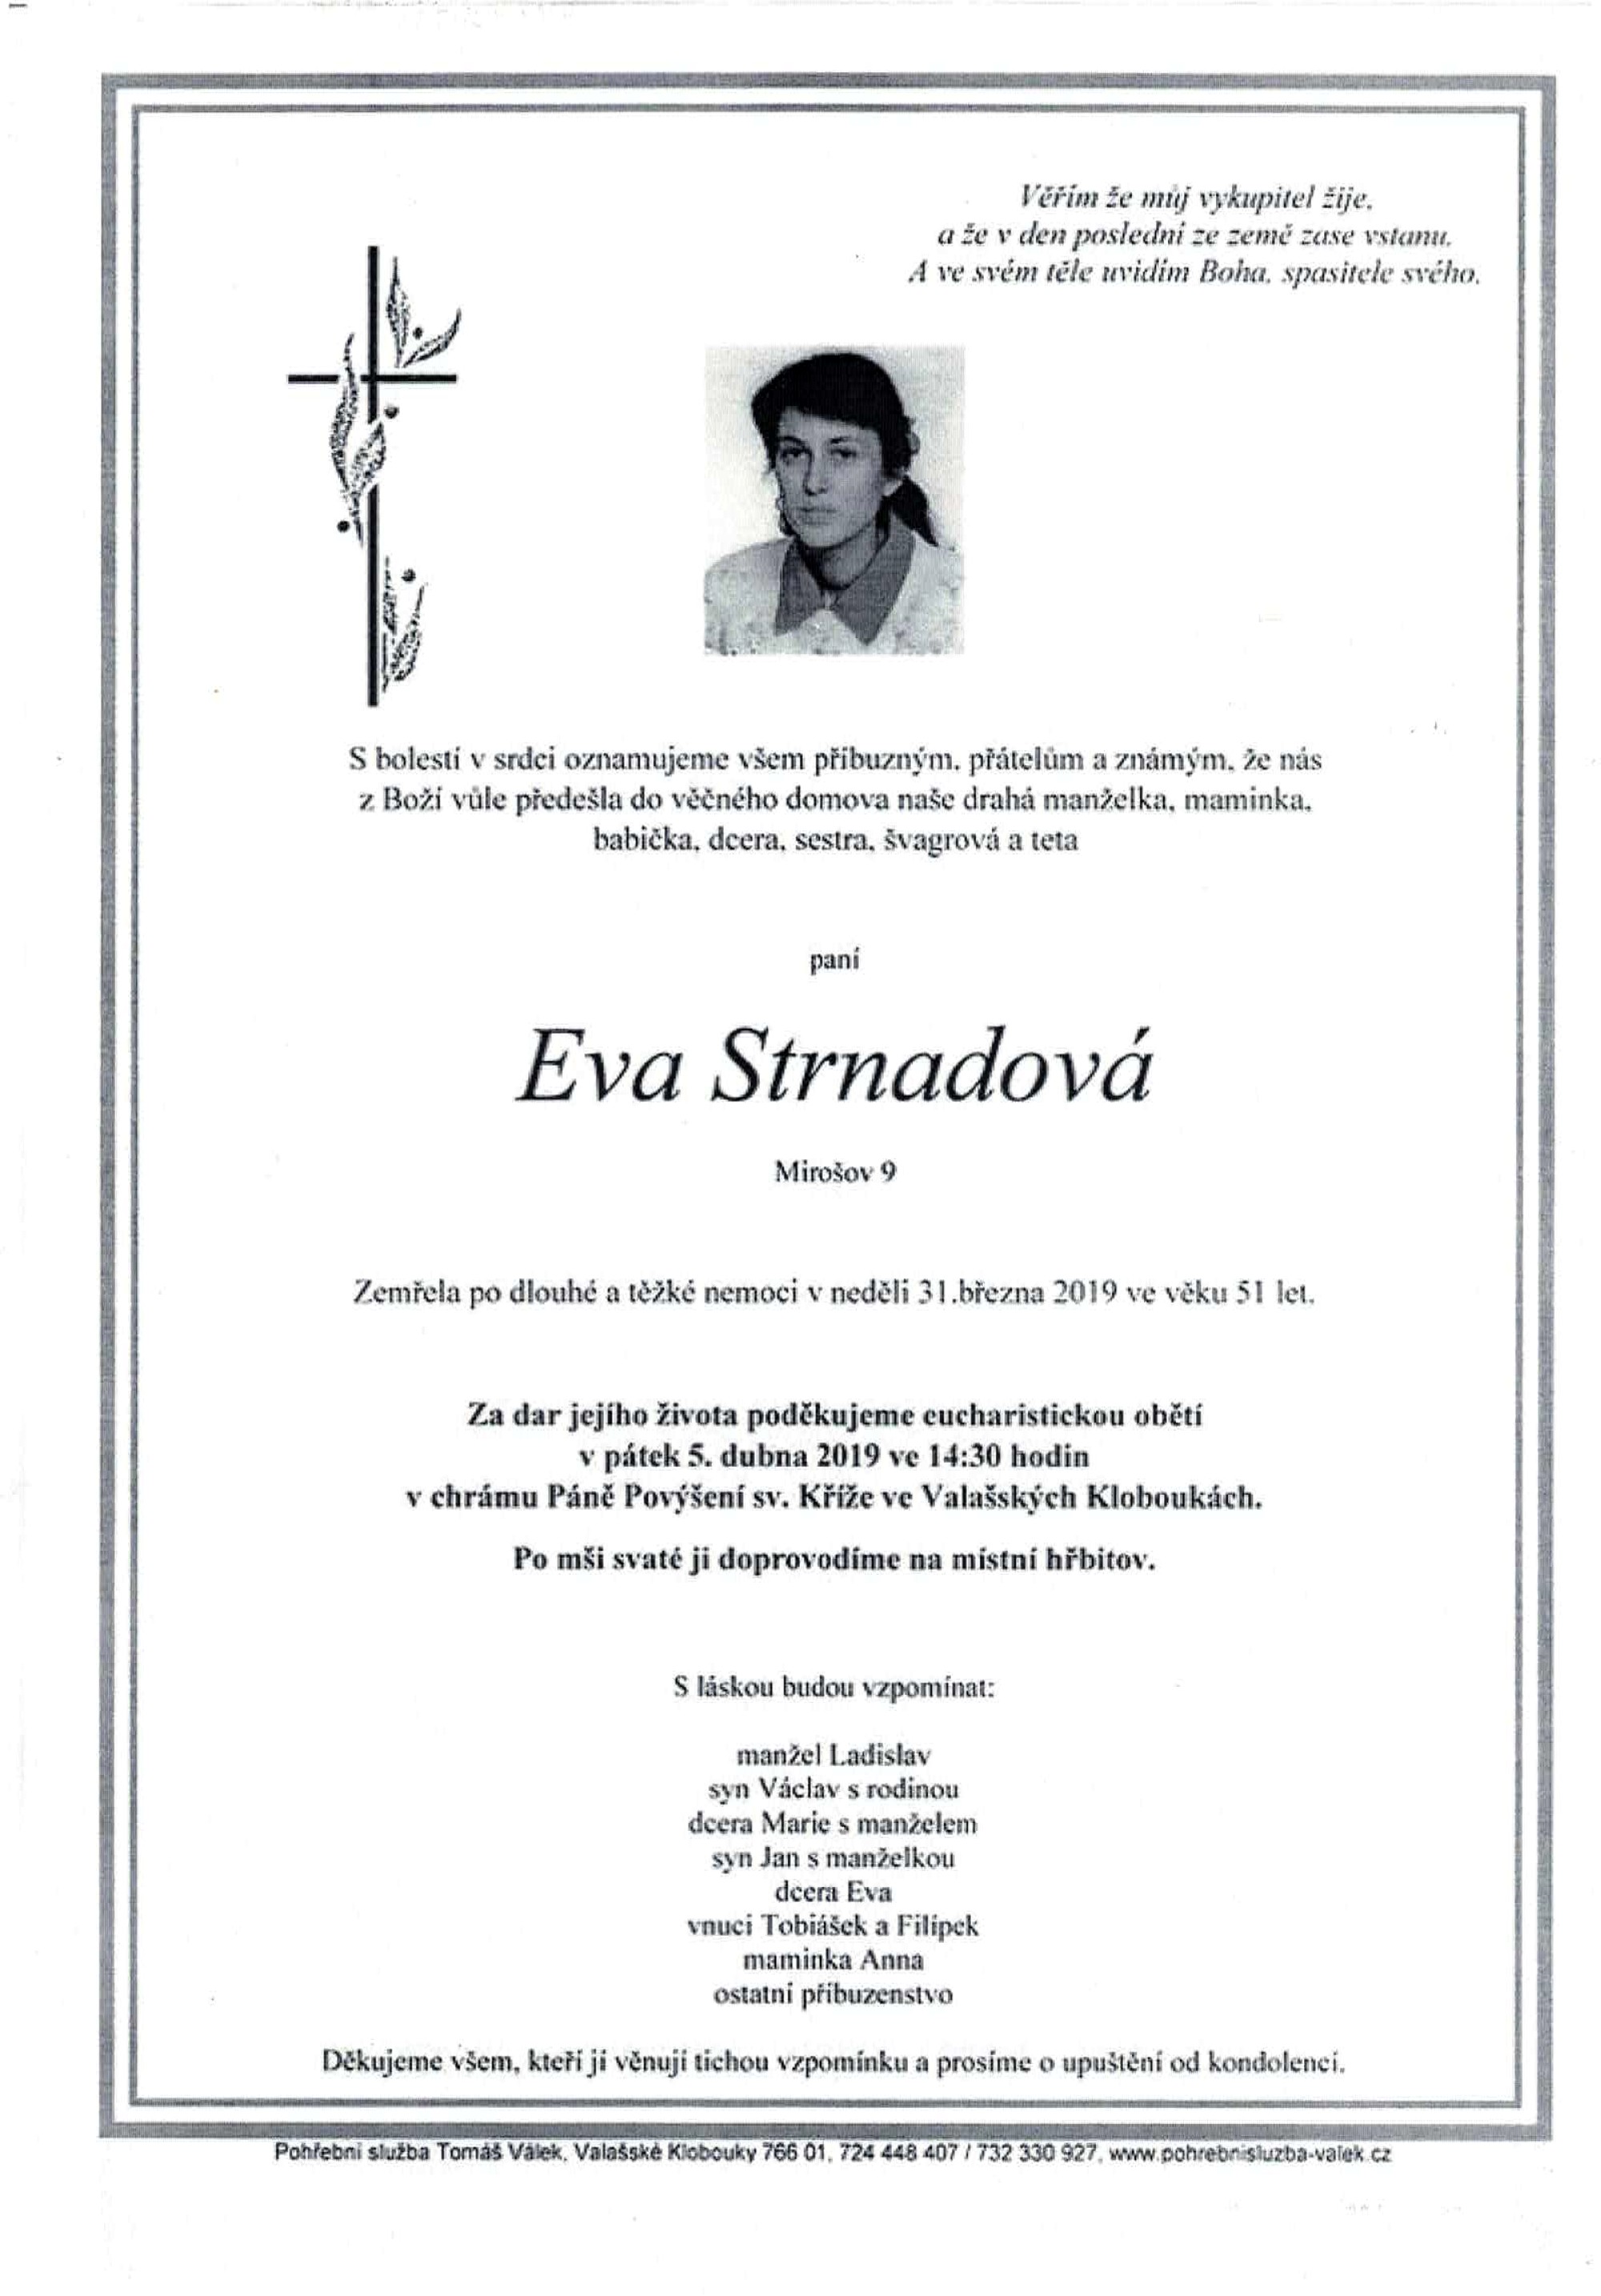 Eva Strnadová